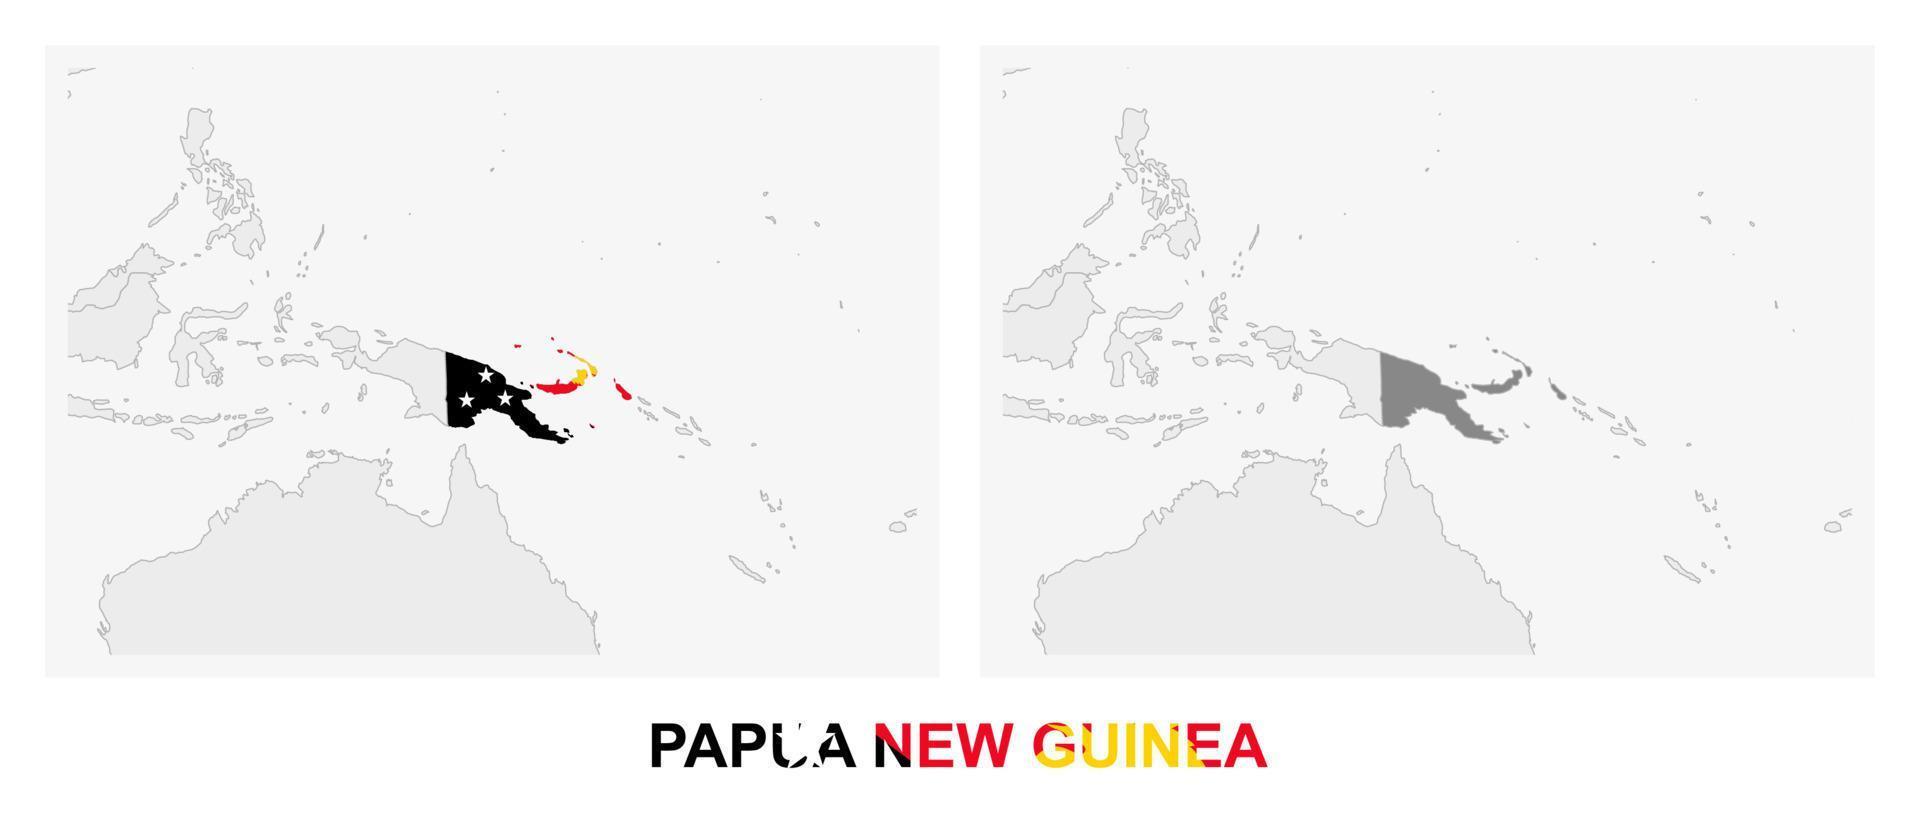 dos versiones del mapa de papua nueva guinea, con la bandera de papua nueva guinea y resaltada en gris oscuro. vector